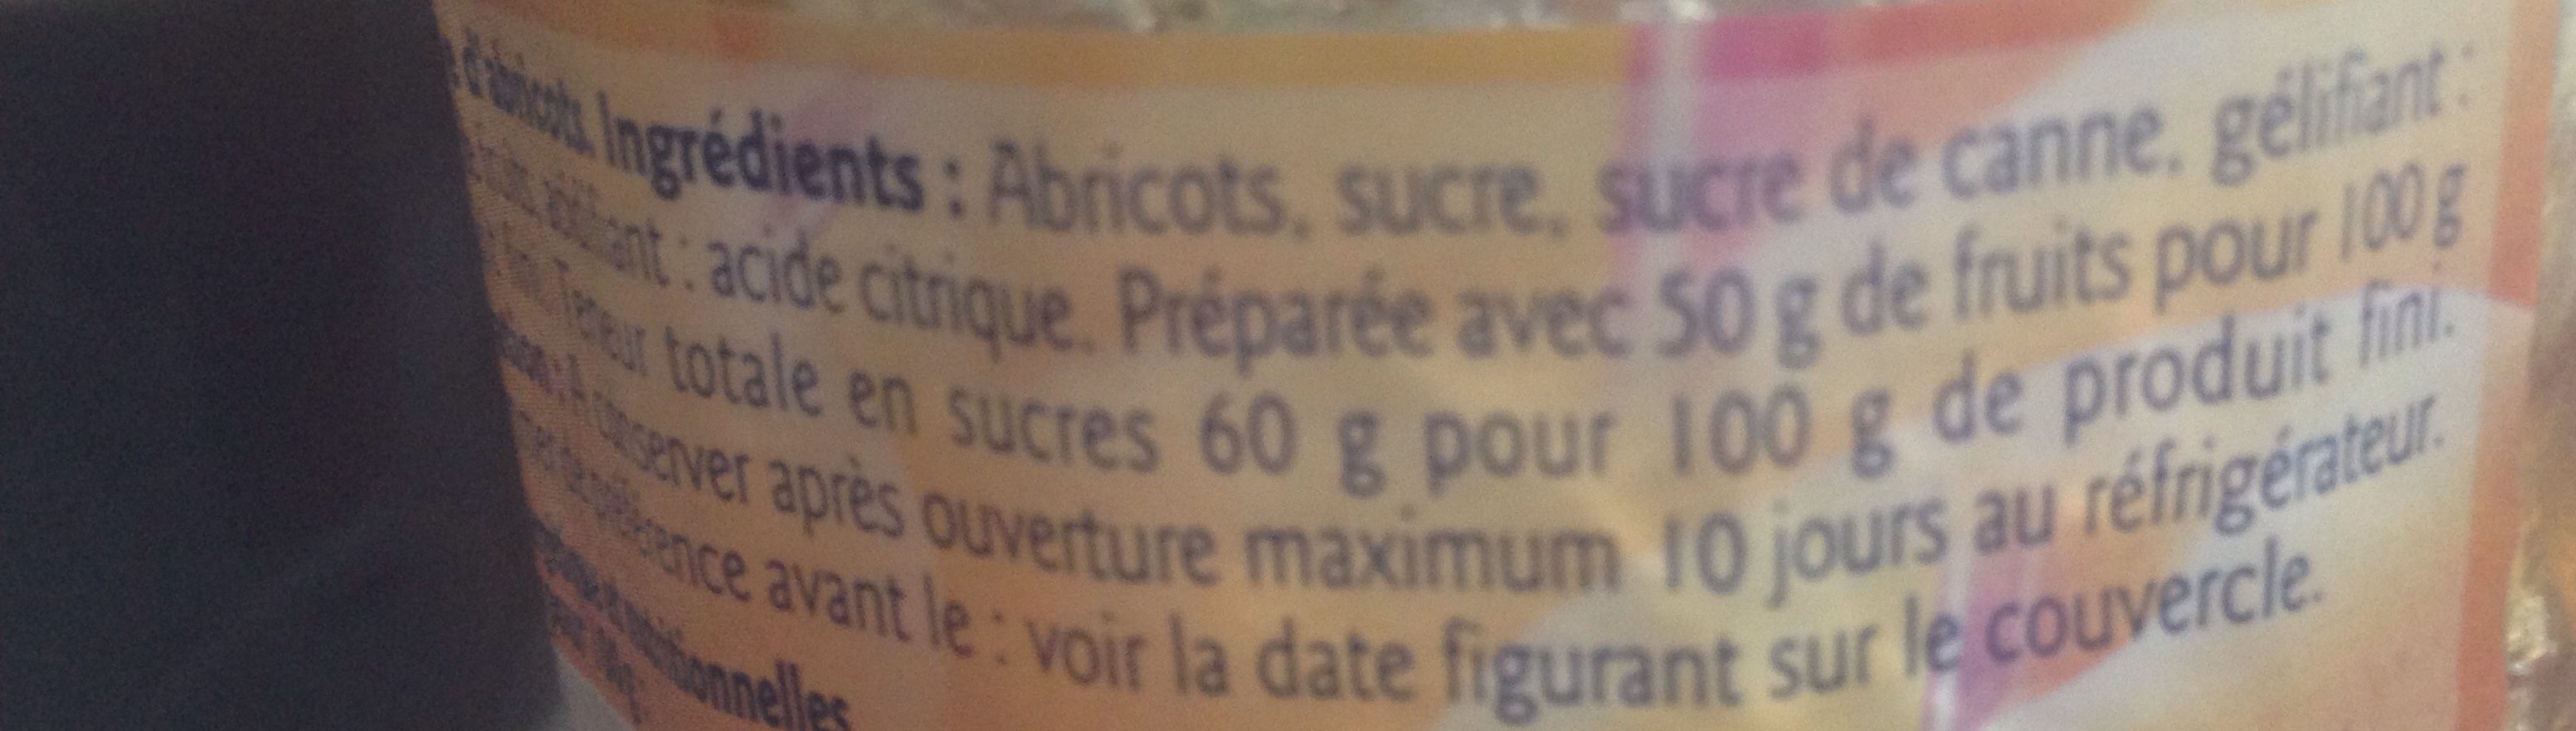 Confiture Abricots - Ingrédients